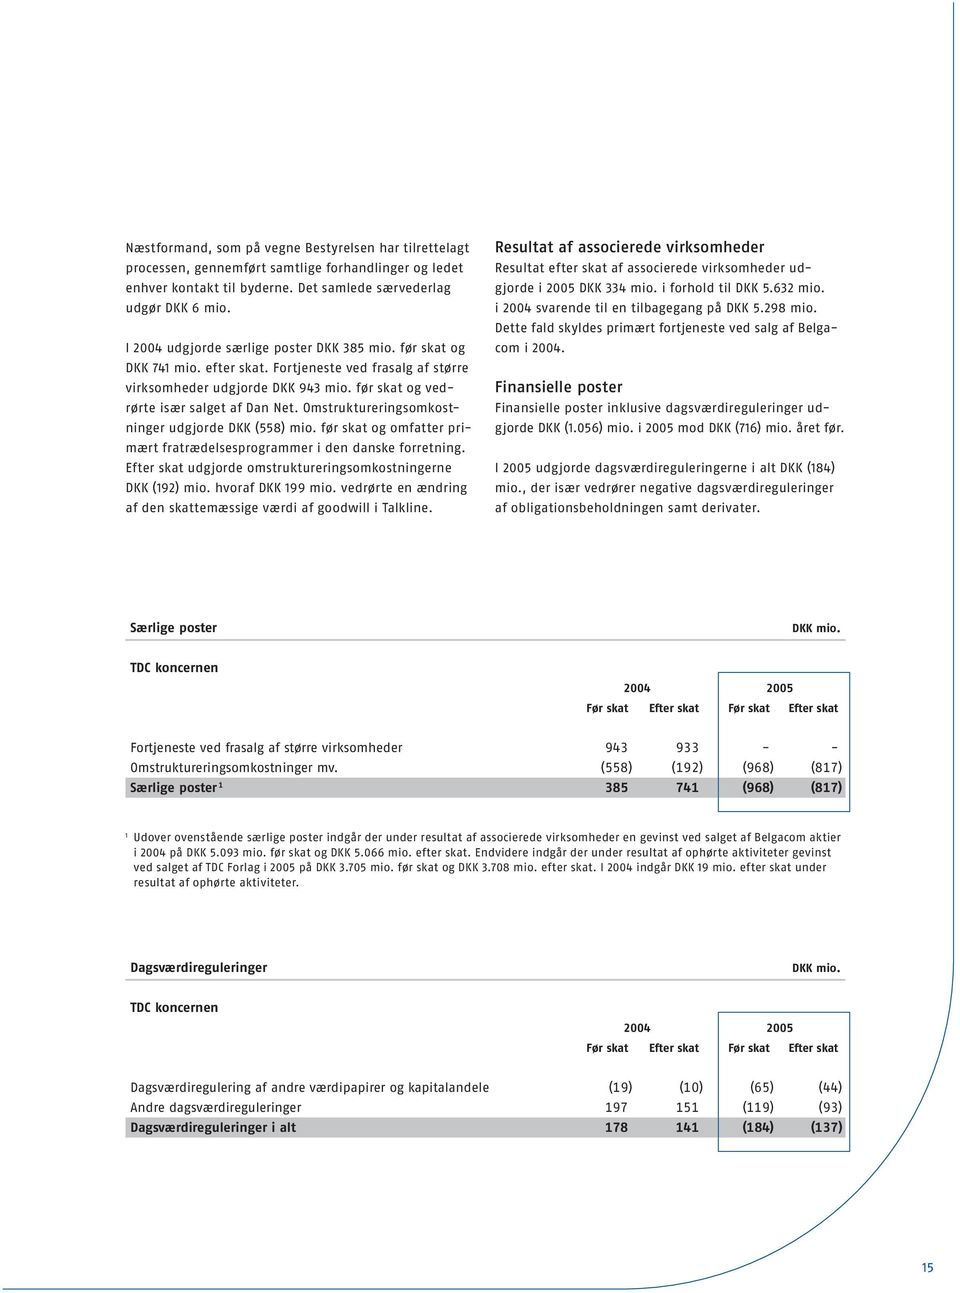 Omstruktureringsomkostninger udgjorde DKK (558) mio. før skat og omfatter primært fratrædelsesprogrammer i den danske forretning. Efter skat udgjorde omstruktureringsomkostningerne DKK (192) mio.